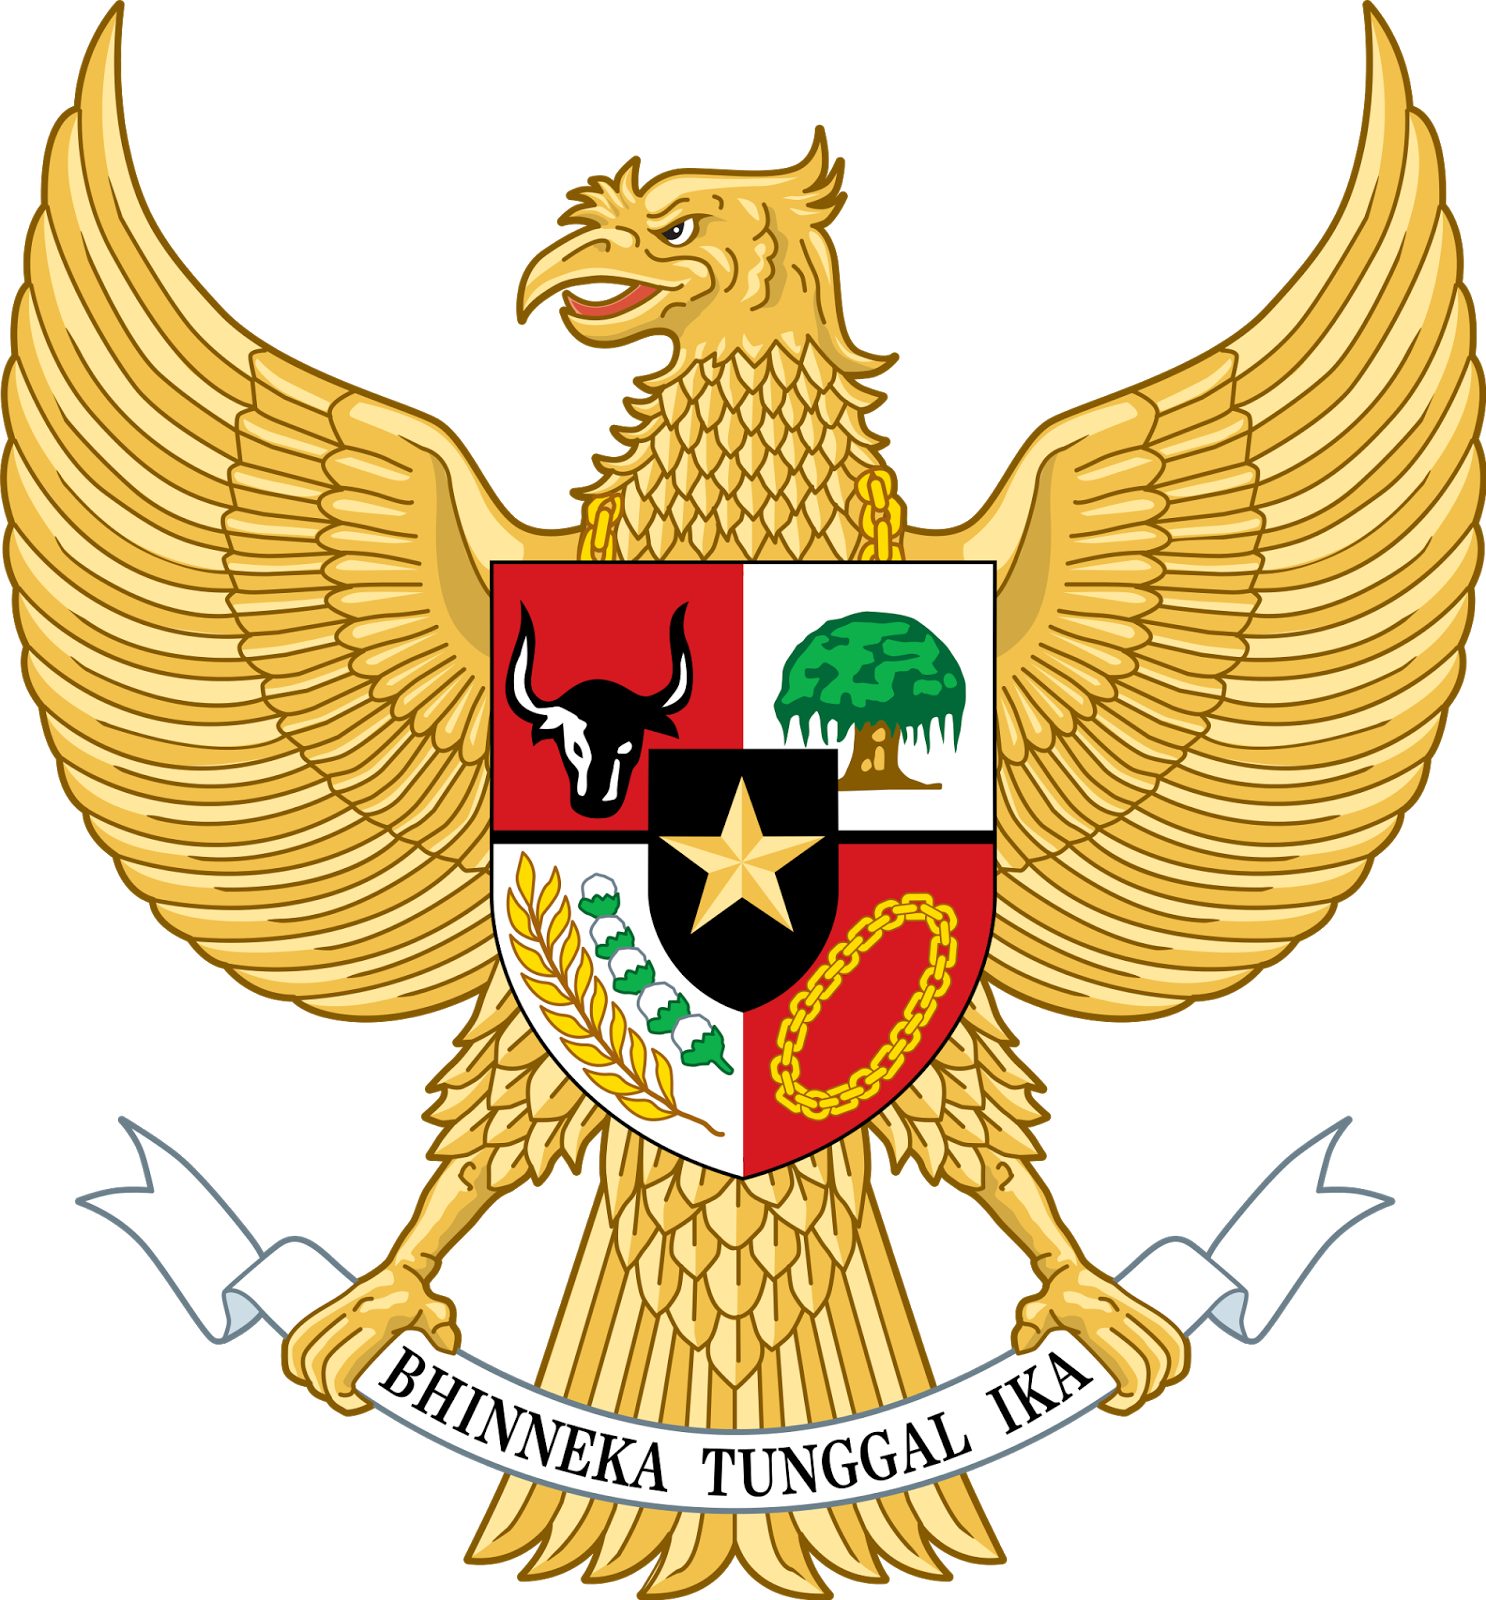  Sudahkah anda tahu siapa pembuat lambang garuda pancasila dasar negara Indonesia Sejarah Garuda Pancasila Lambang Negara Indonesia